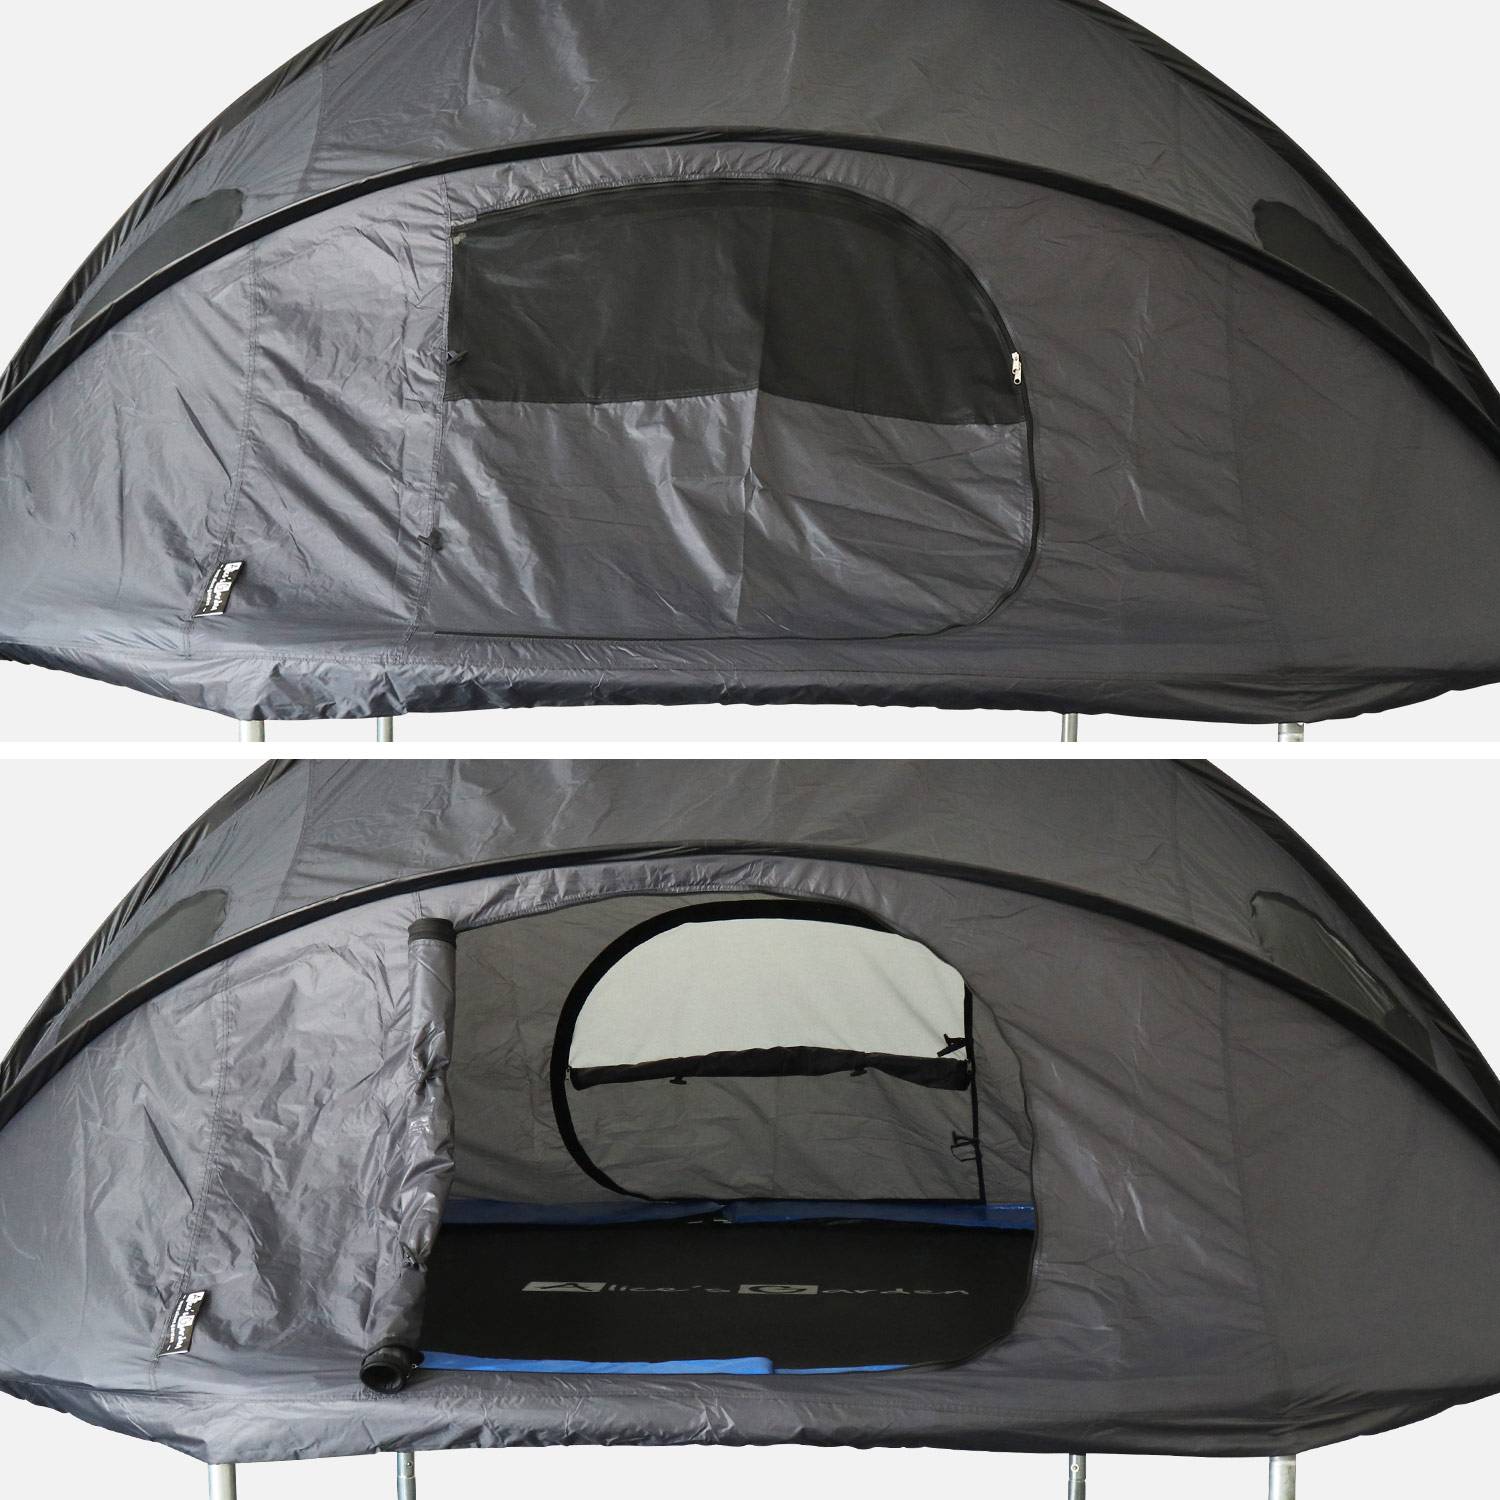 Carpa para cama elástica Ø305cm (red interior y exterior) poliéster, tratamiento UV, 2 puertas, 4 ventanas y bolsa de transporte Photo3